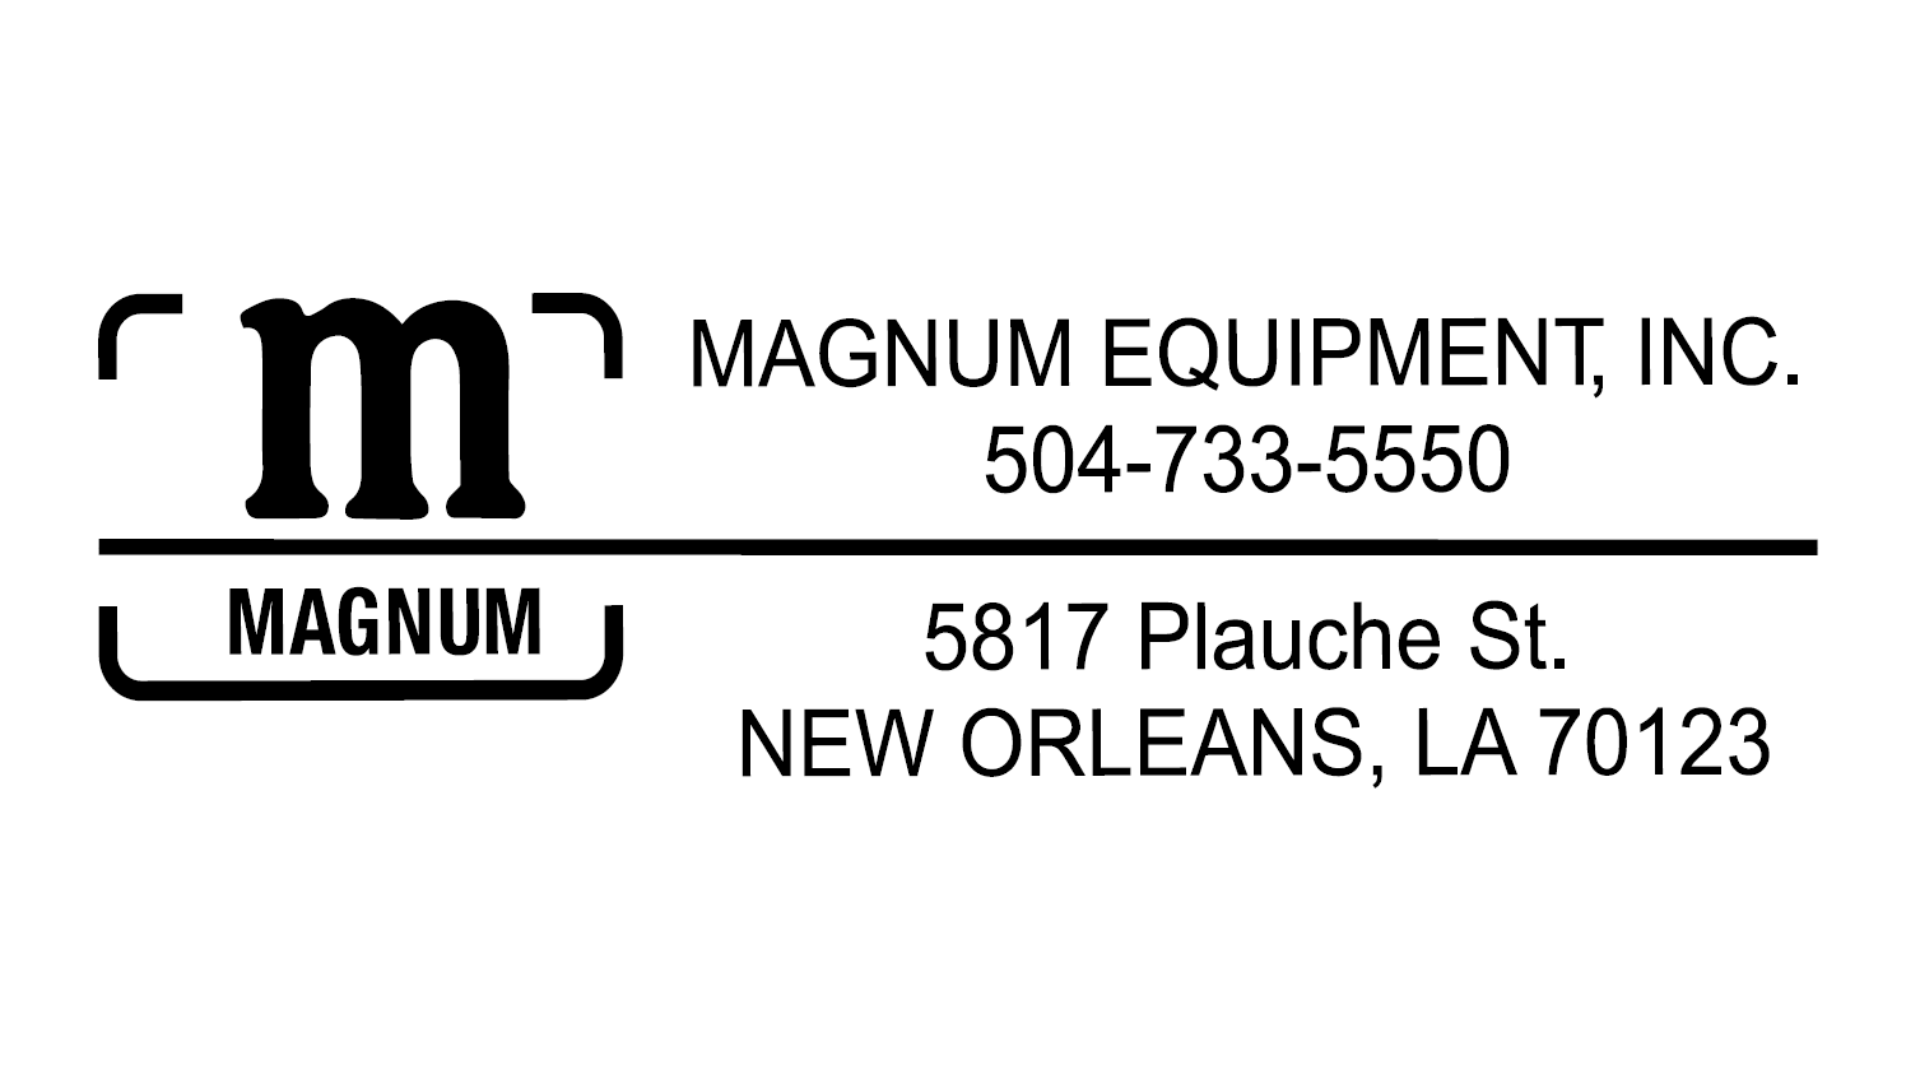 Magnum - MECO Gold Sponsor